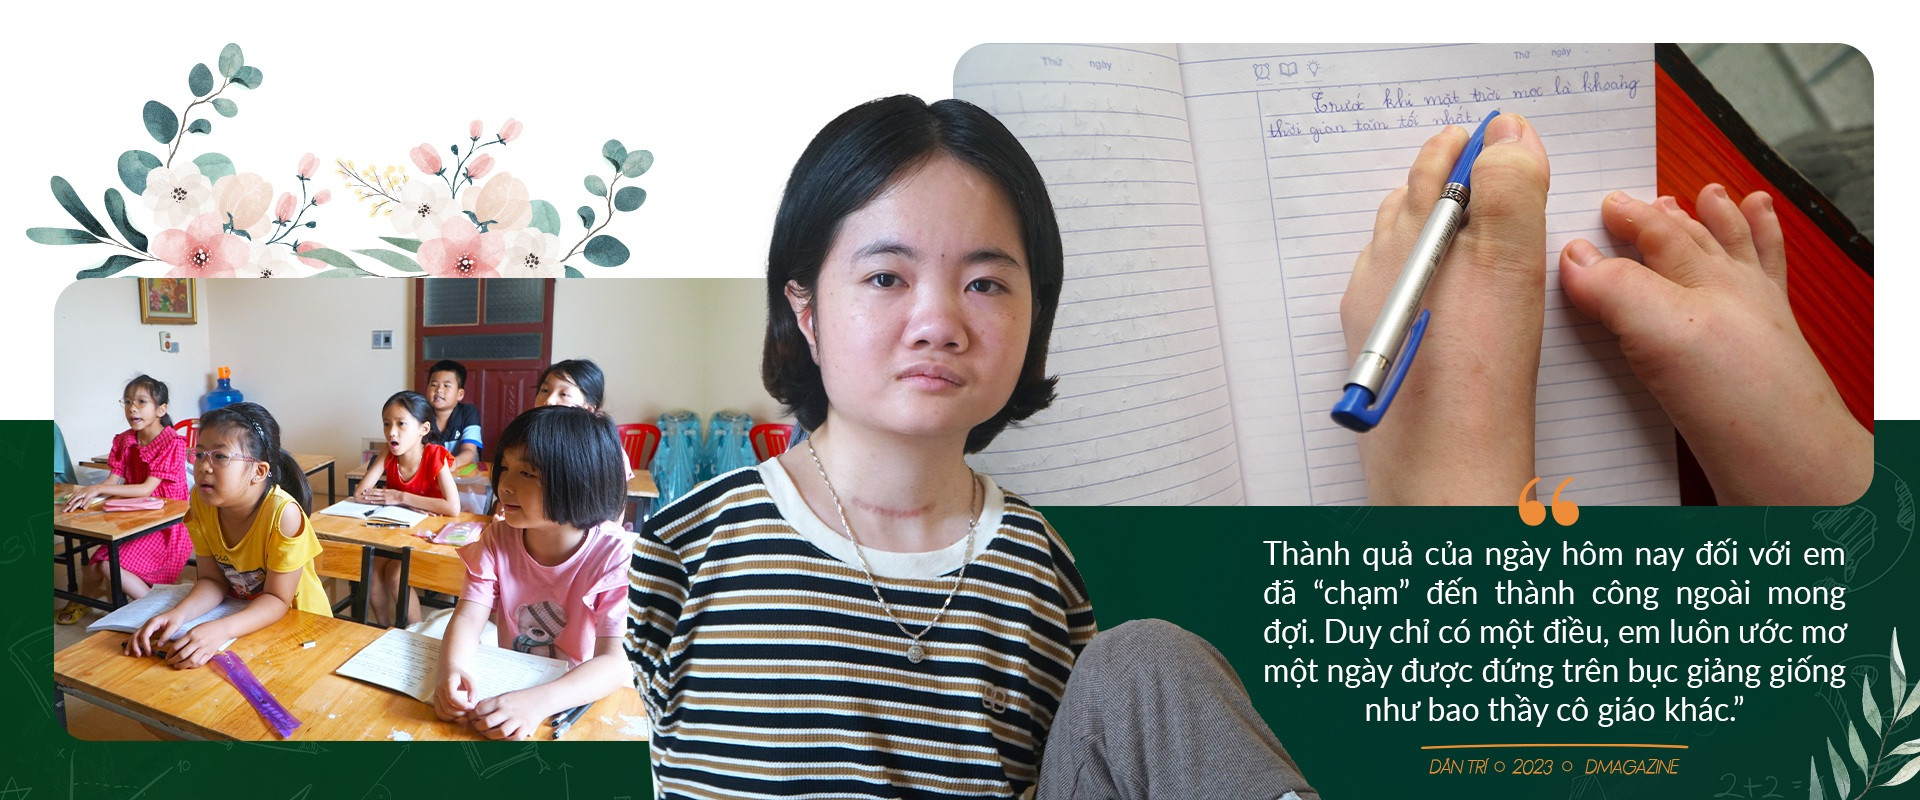 Lớp học đặc biệt ở xứ Thanh, cô giáo cầm bút bằng chân - 15